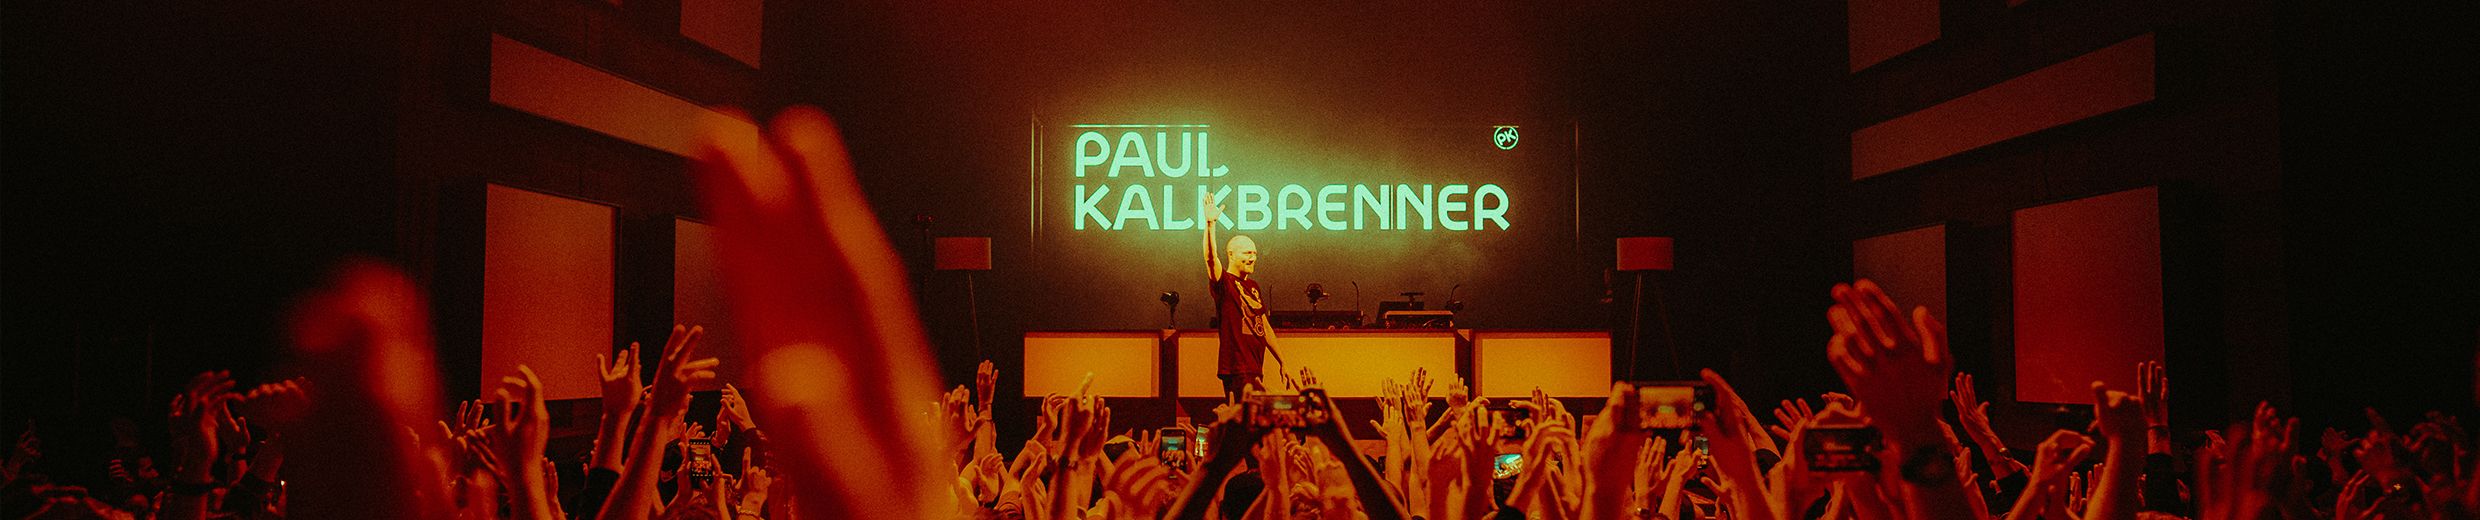 Stream Paul Kalkbrenner - Azure (Original Mix) by PaulKalkbrenner | Listen  online for free on SoundCloud